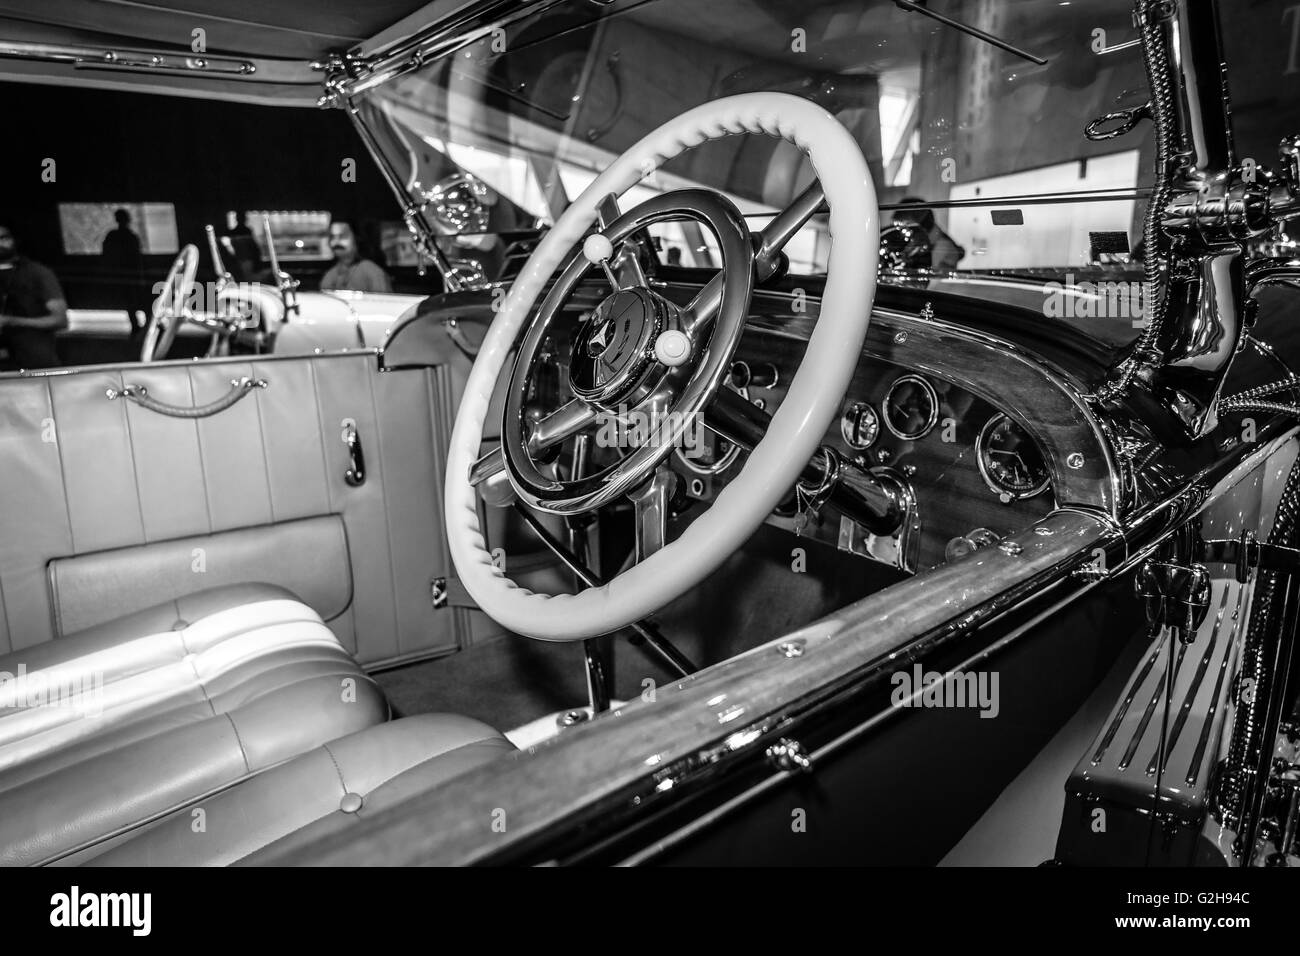 STUTTGART, Germania- 19 marzo 2016: cabina di auto di lusso Mercedes-Benz Typ SS (Super Sport), 1930. In bianco e nero. Mercedes-Benz Foto Stock